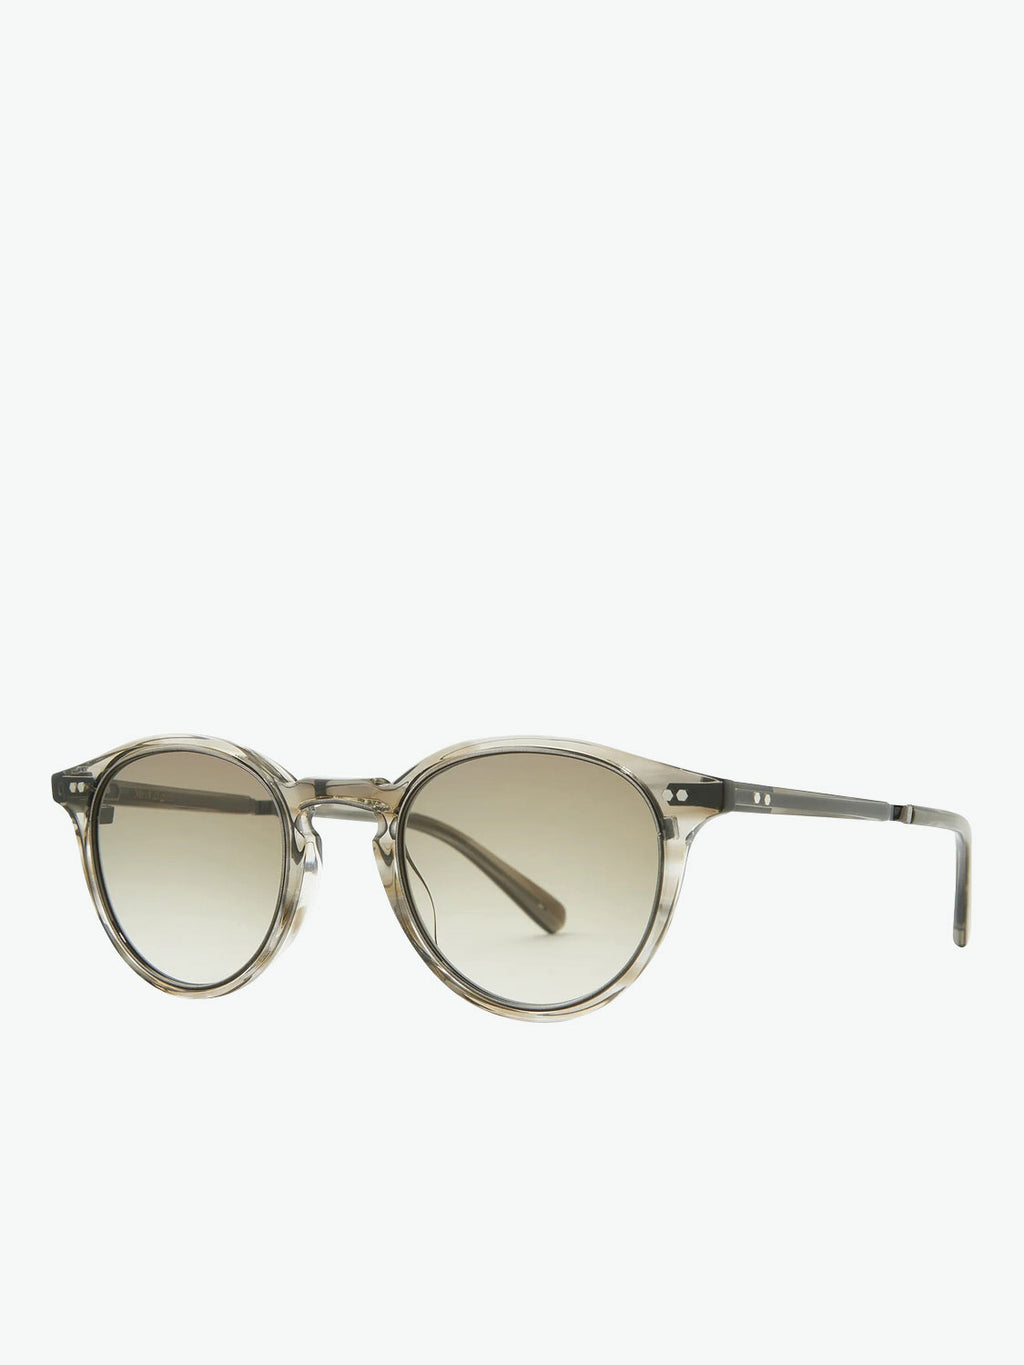 Mr Leight Round Grey Tortoiseshell Sunglasses